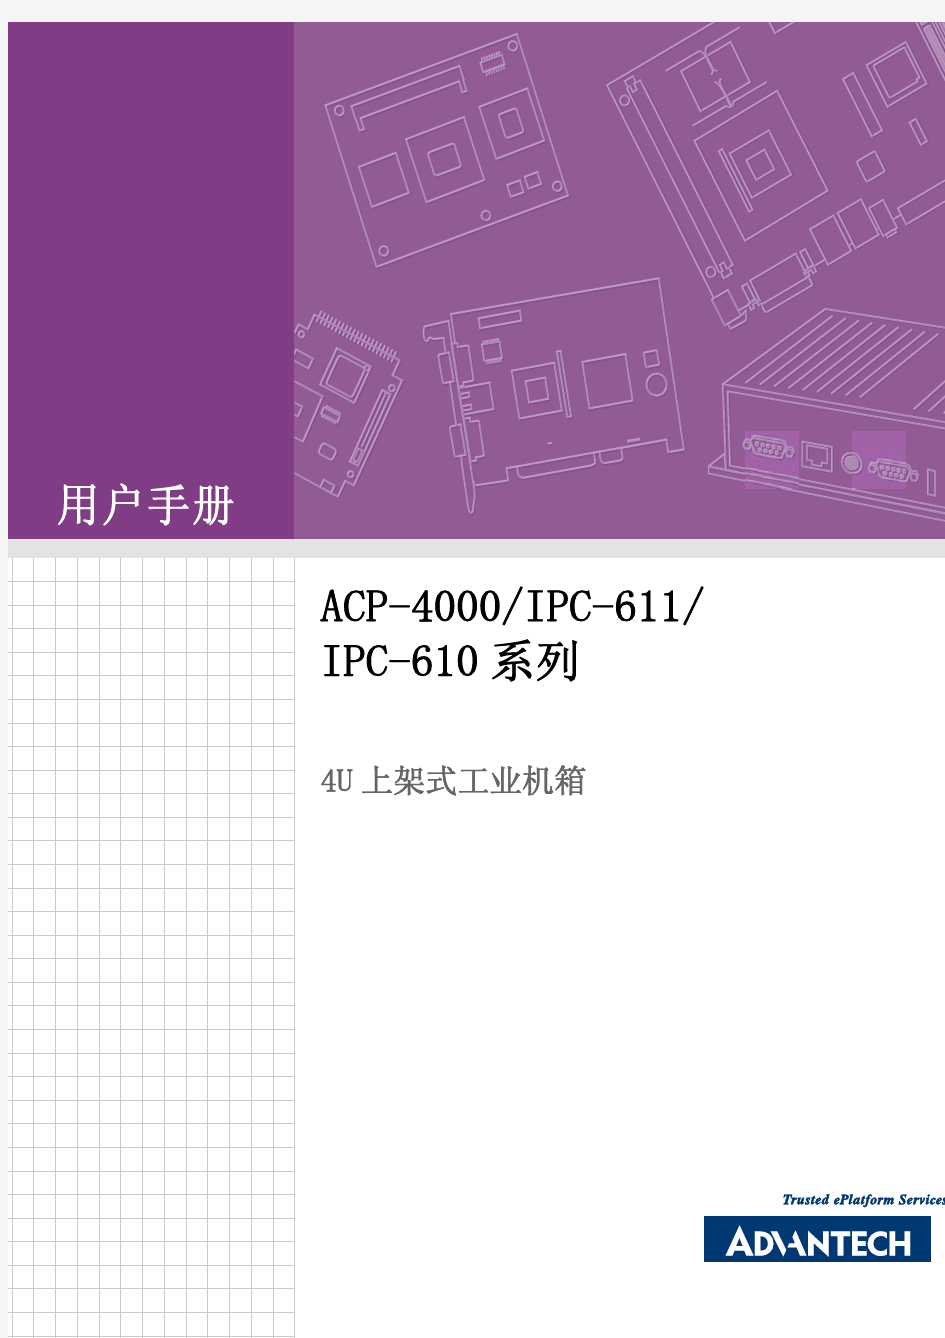 工控机说明书ACP-4000 IPC-611 IPC-610_user_manual(CH)_ed[1].3_Final